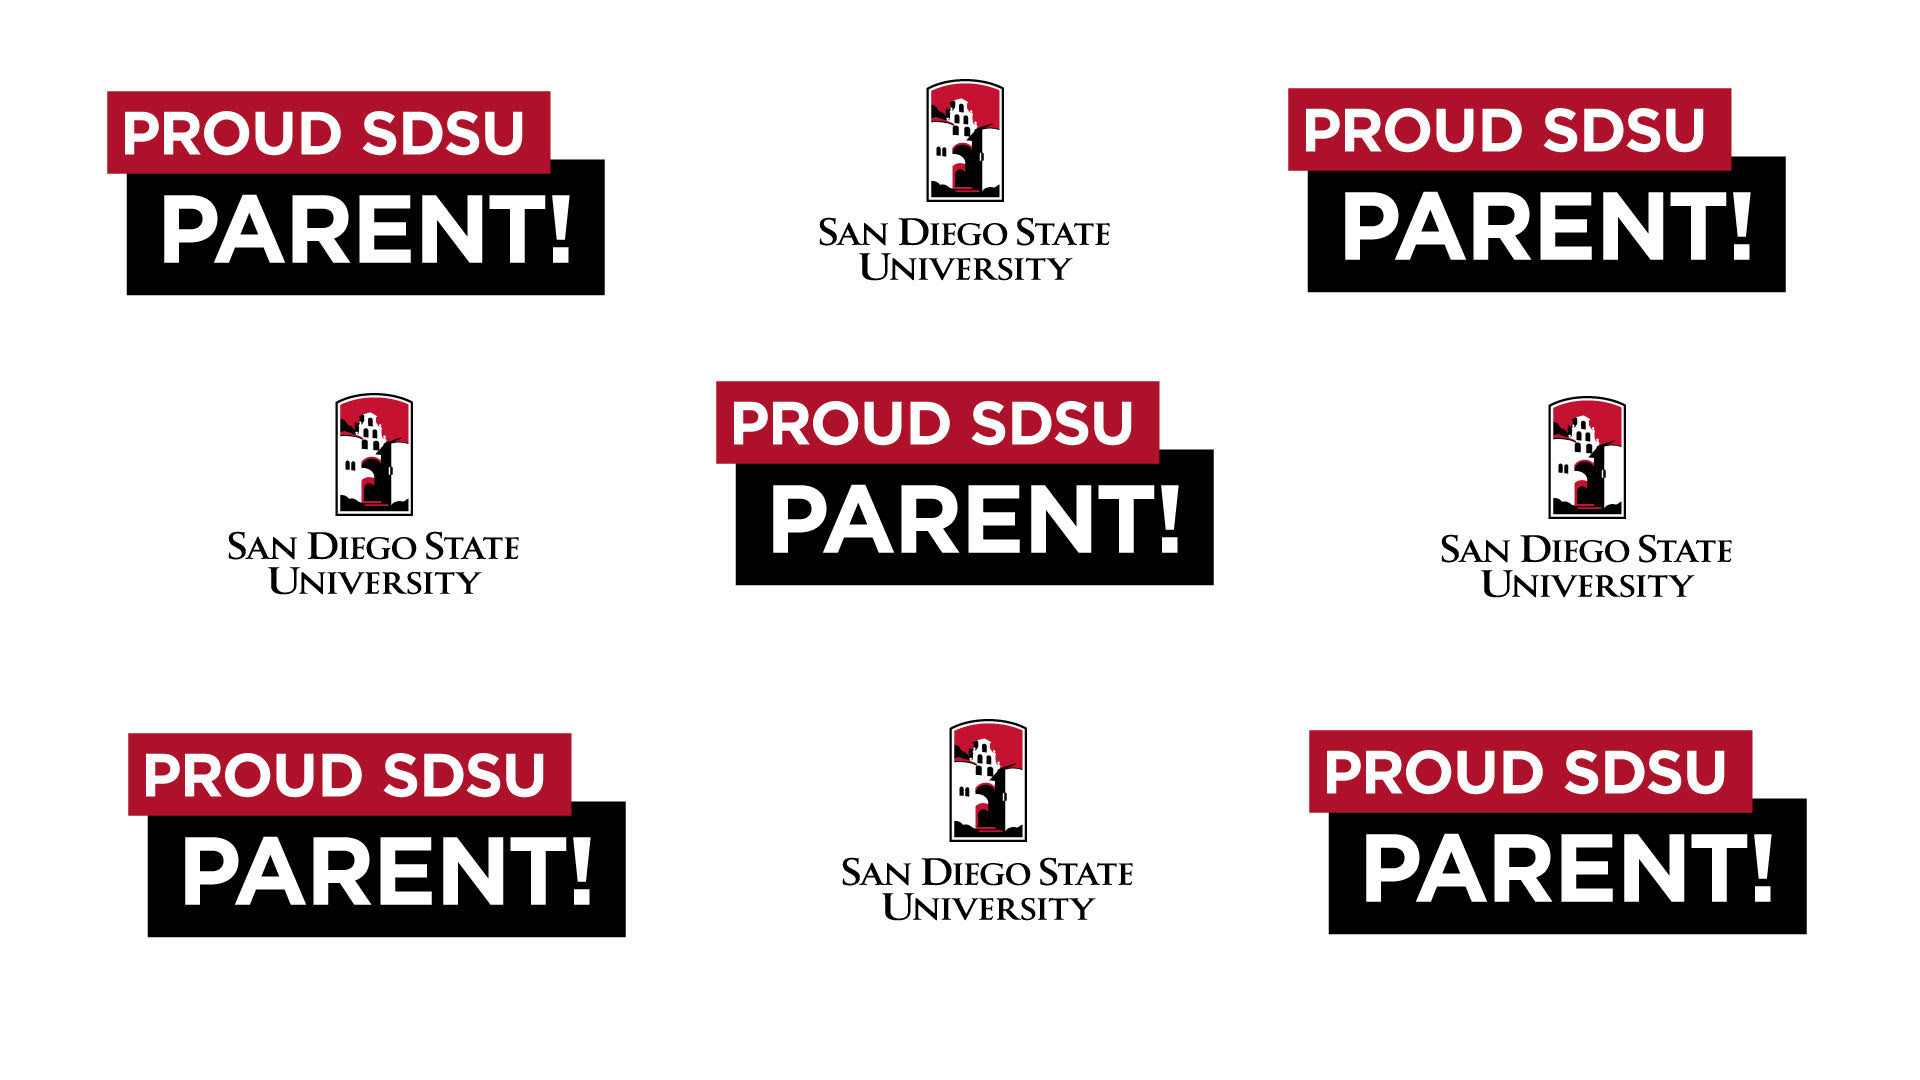 Proud SDSU Parent!